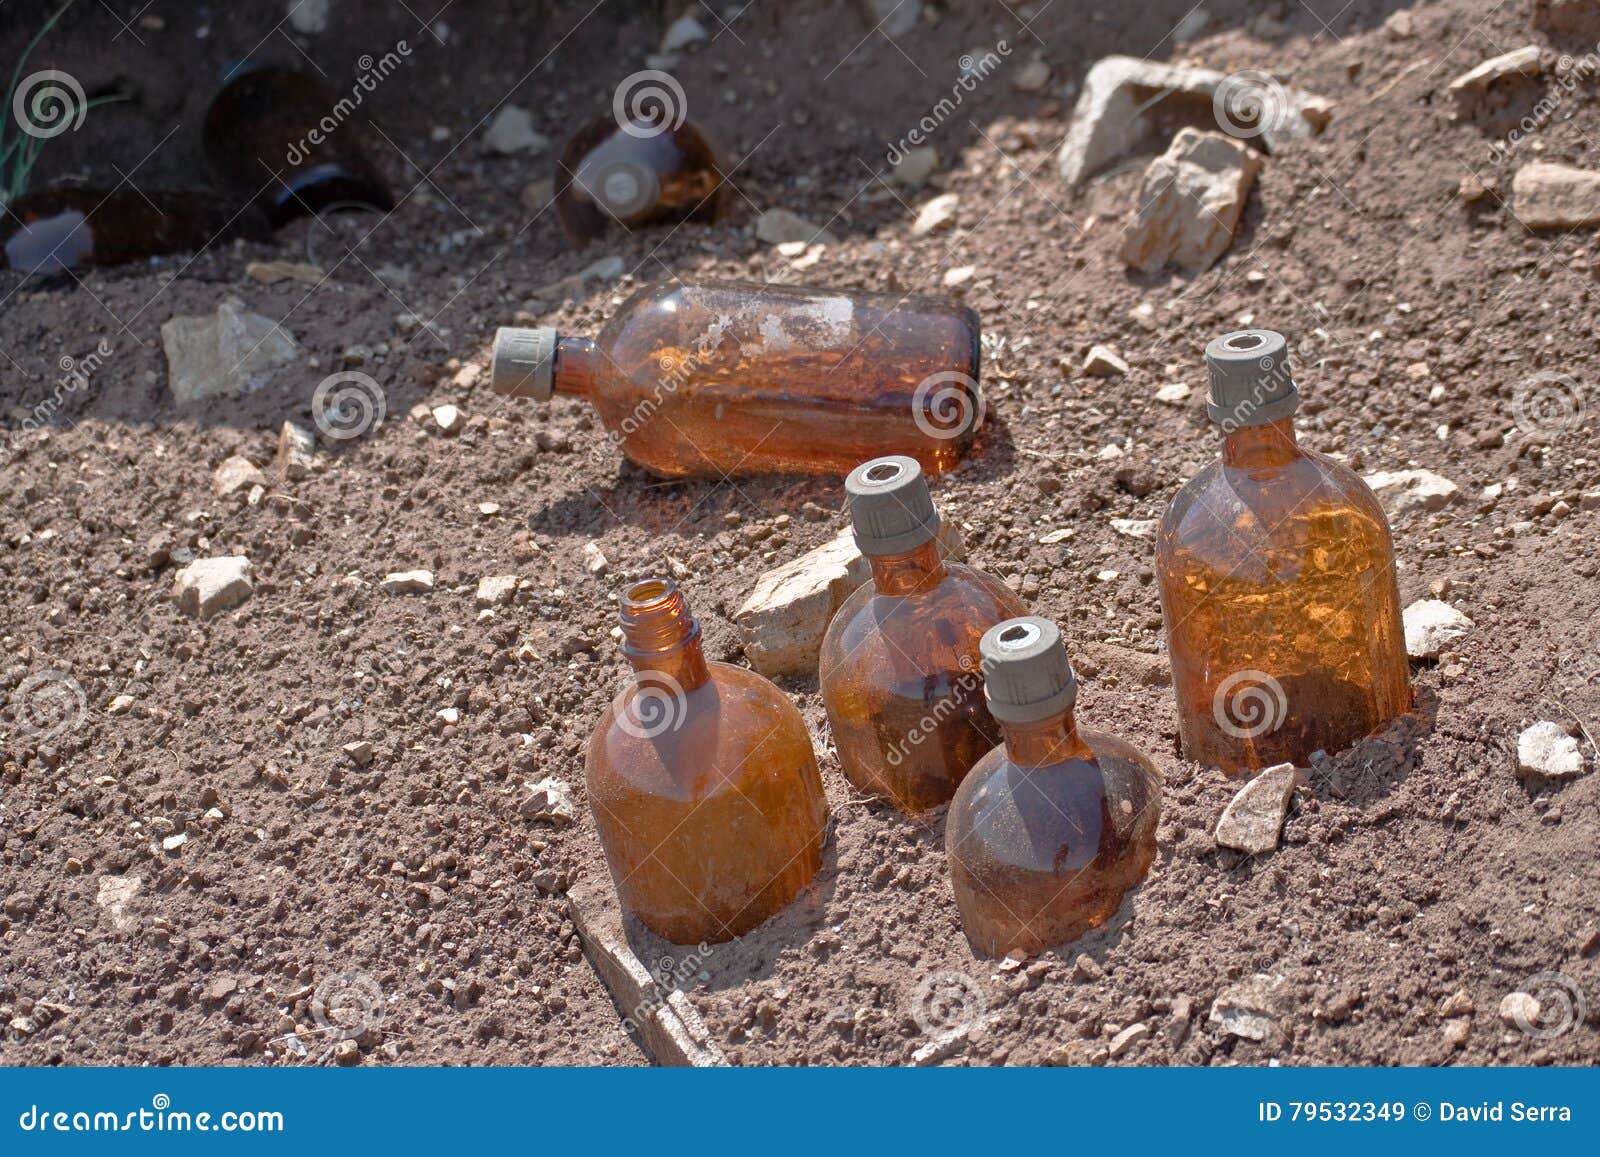 chemical bottles littering the mount